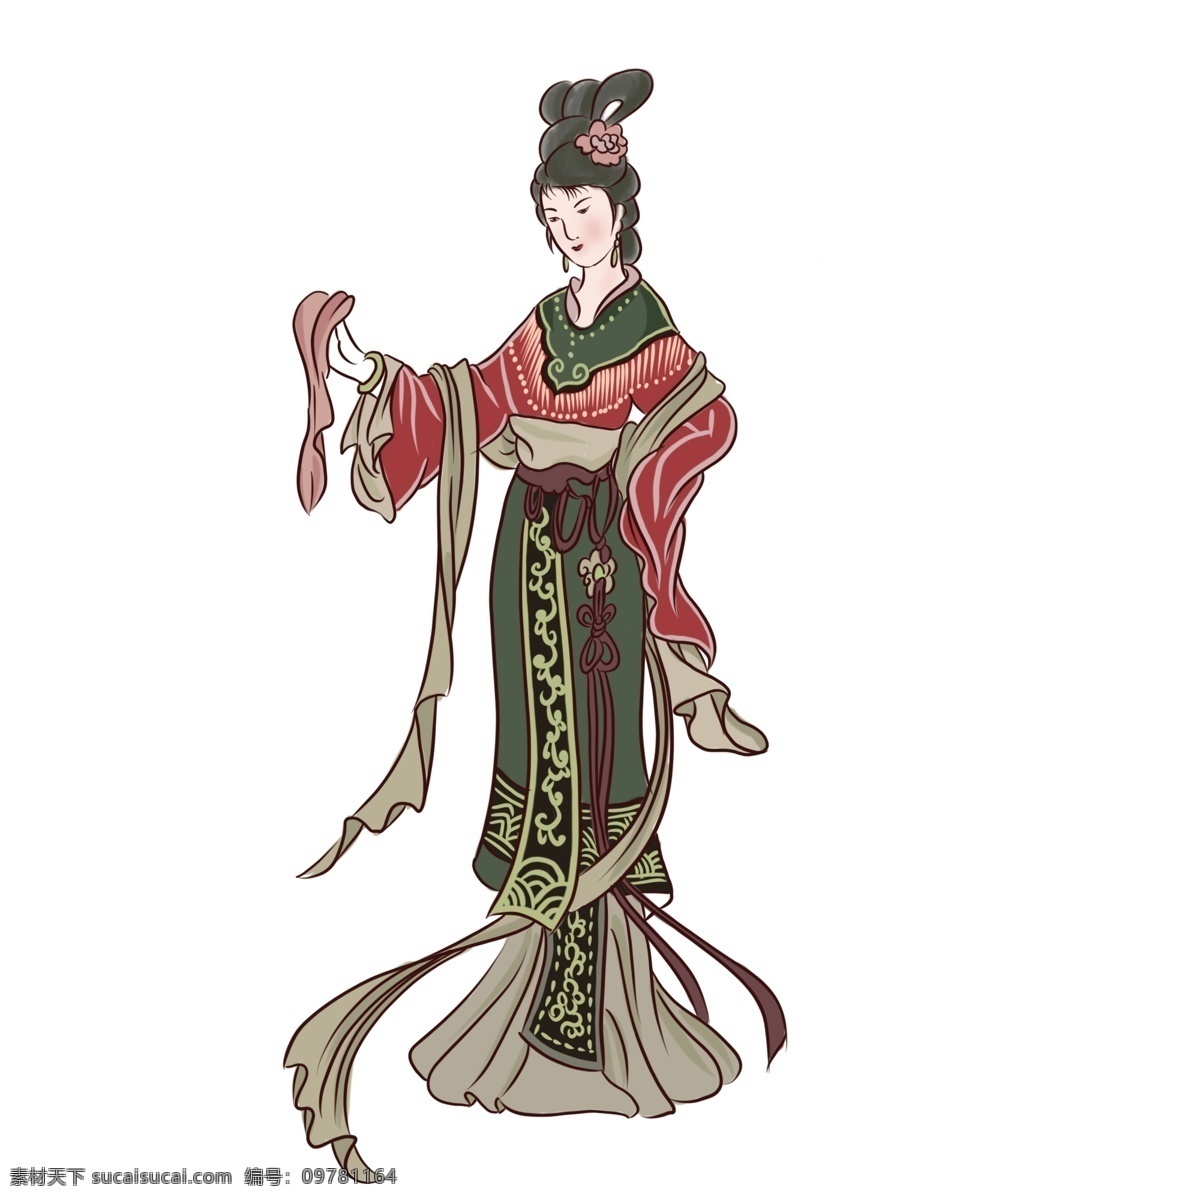 手绘 中国 风 白描 风格 古代 人物 美女 图 手绘人物 中国风 古典人物 古代美人 白描风格人物